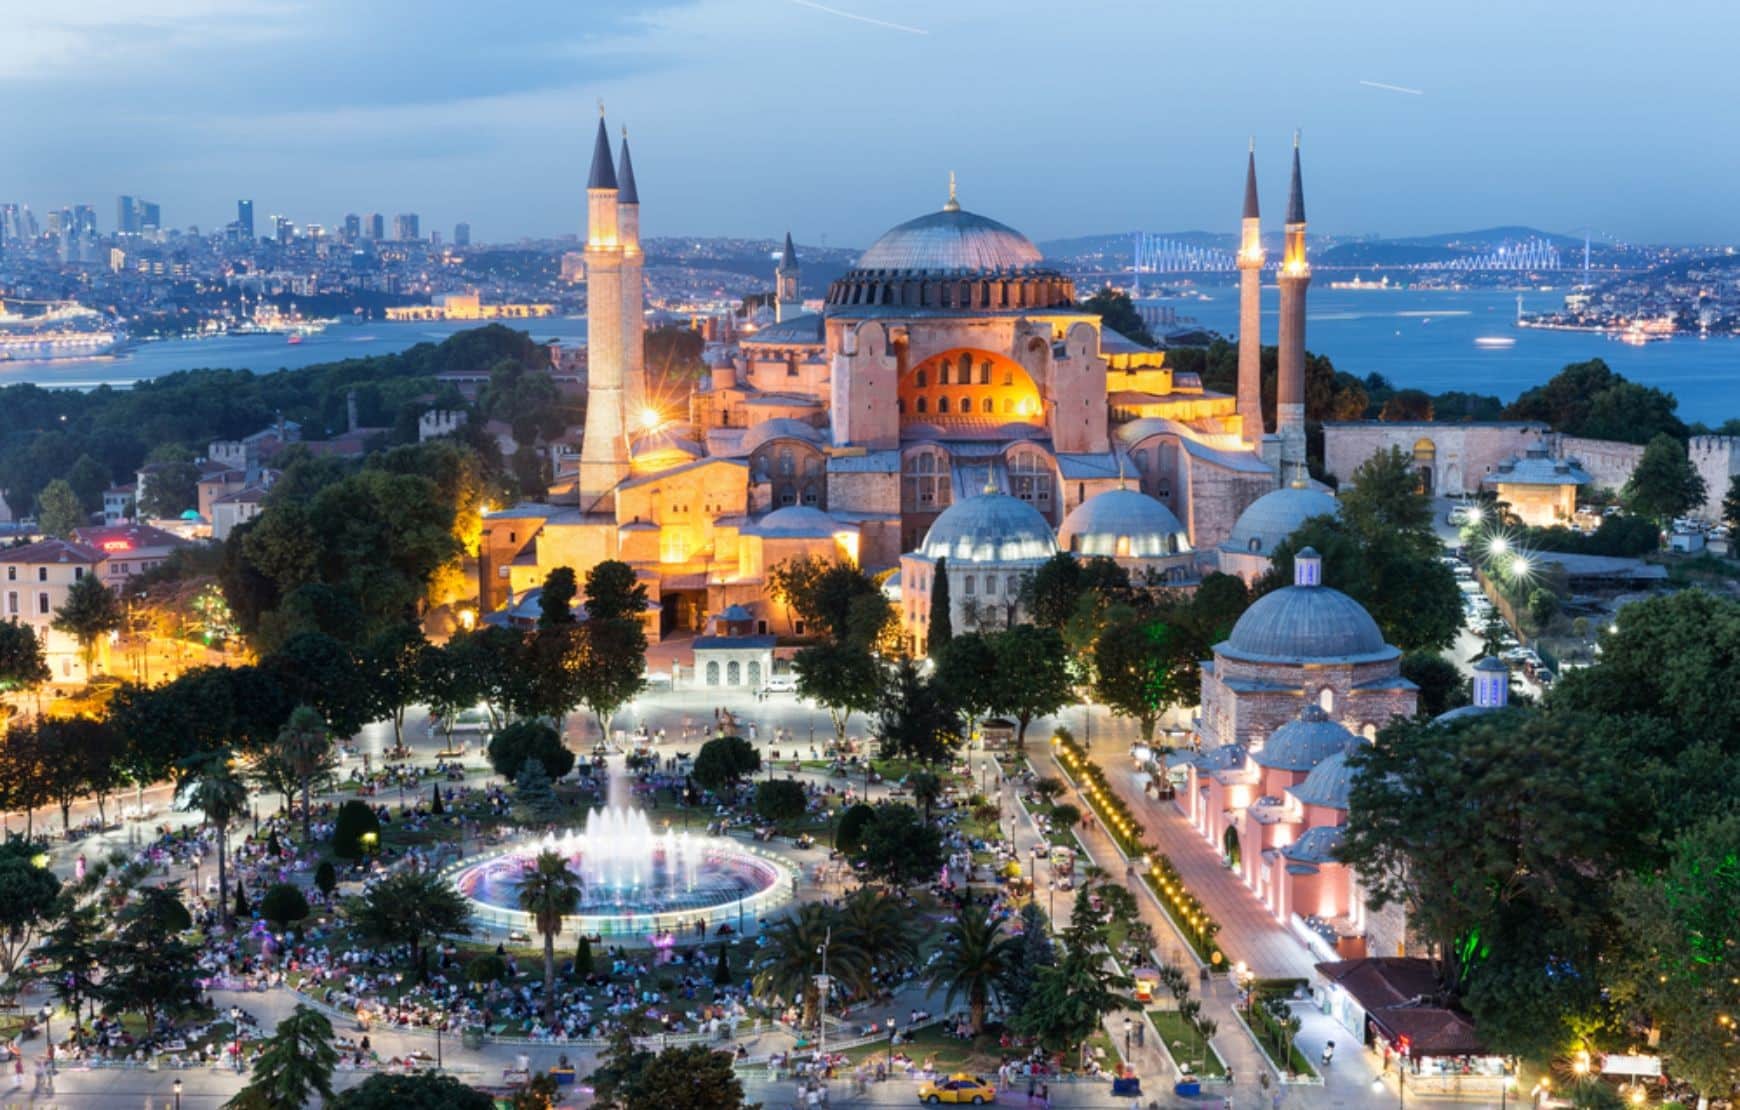 Istanbul Aerial view of Hagia Sophia